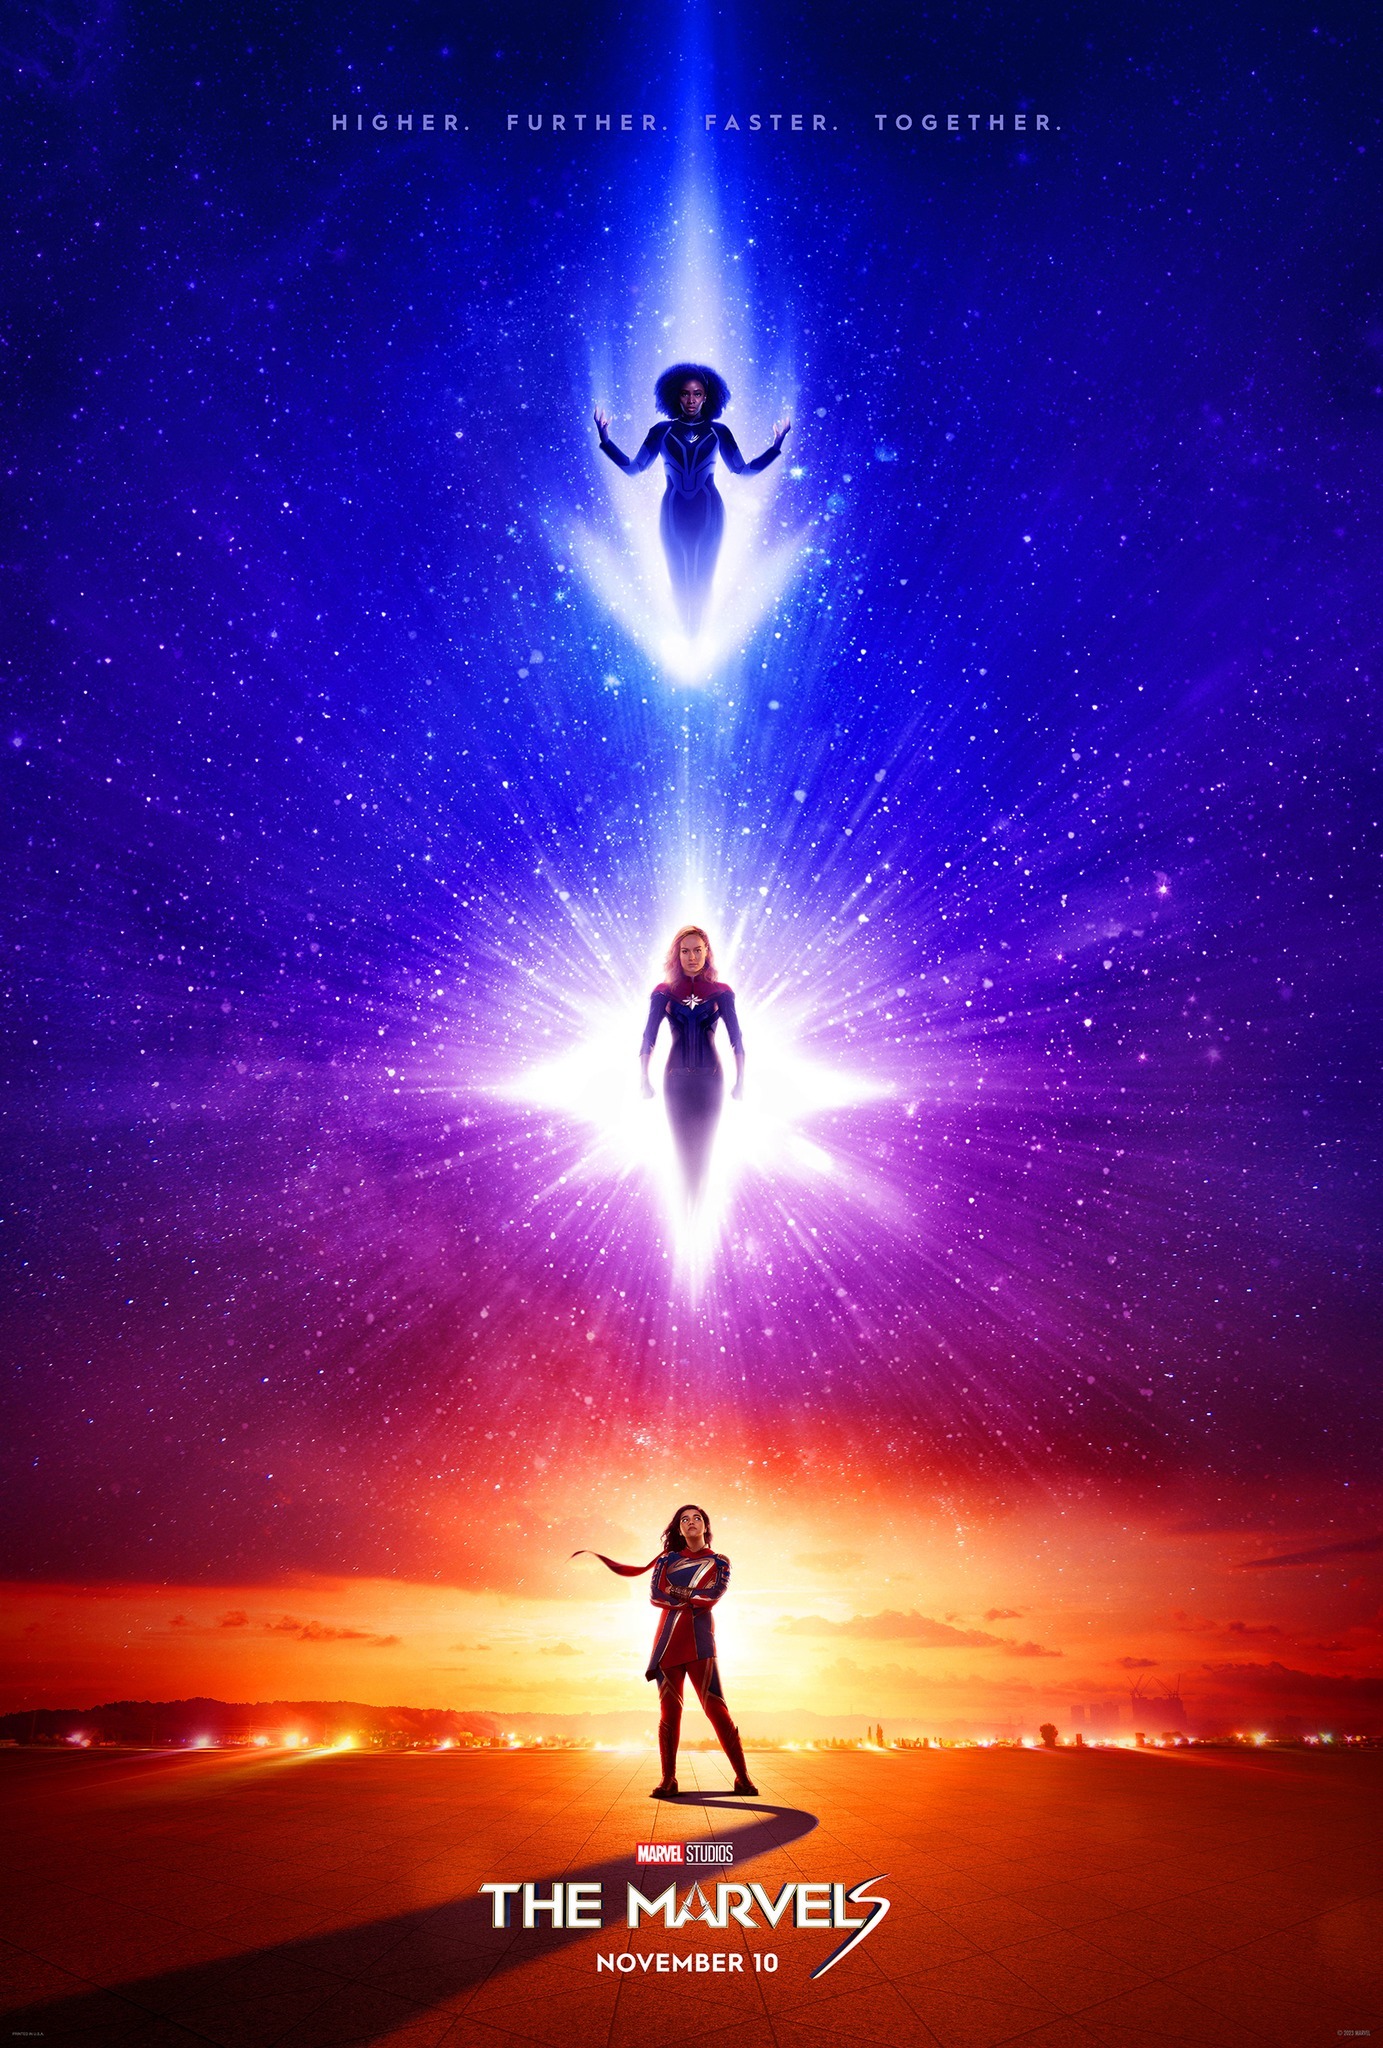 《惊奇队长 2》公开最新电影海报 惊奇队长、惊奇少女、莫妮卡·蓝博同步登场插图